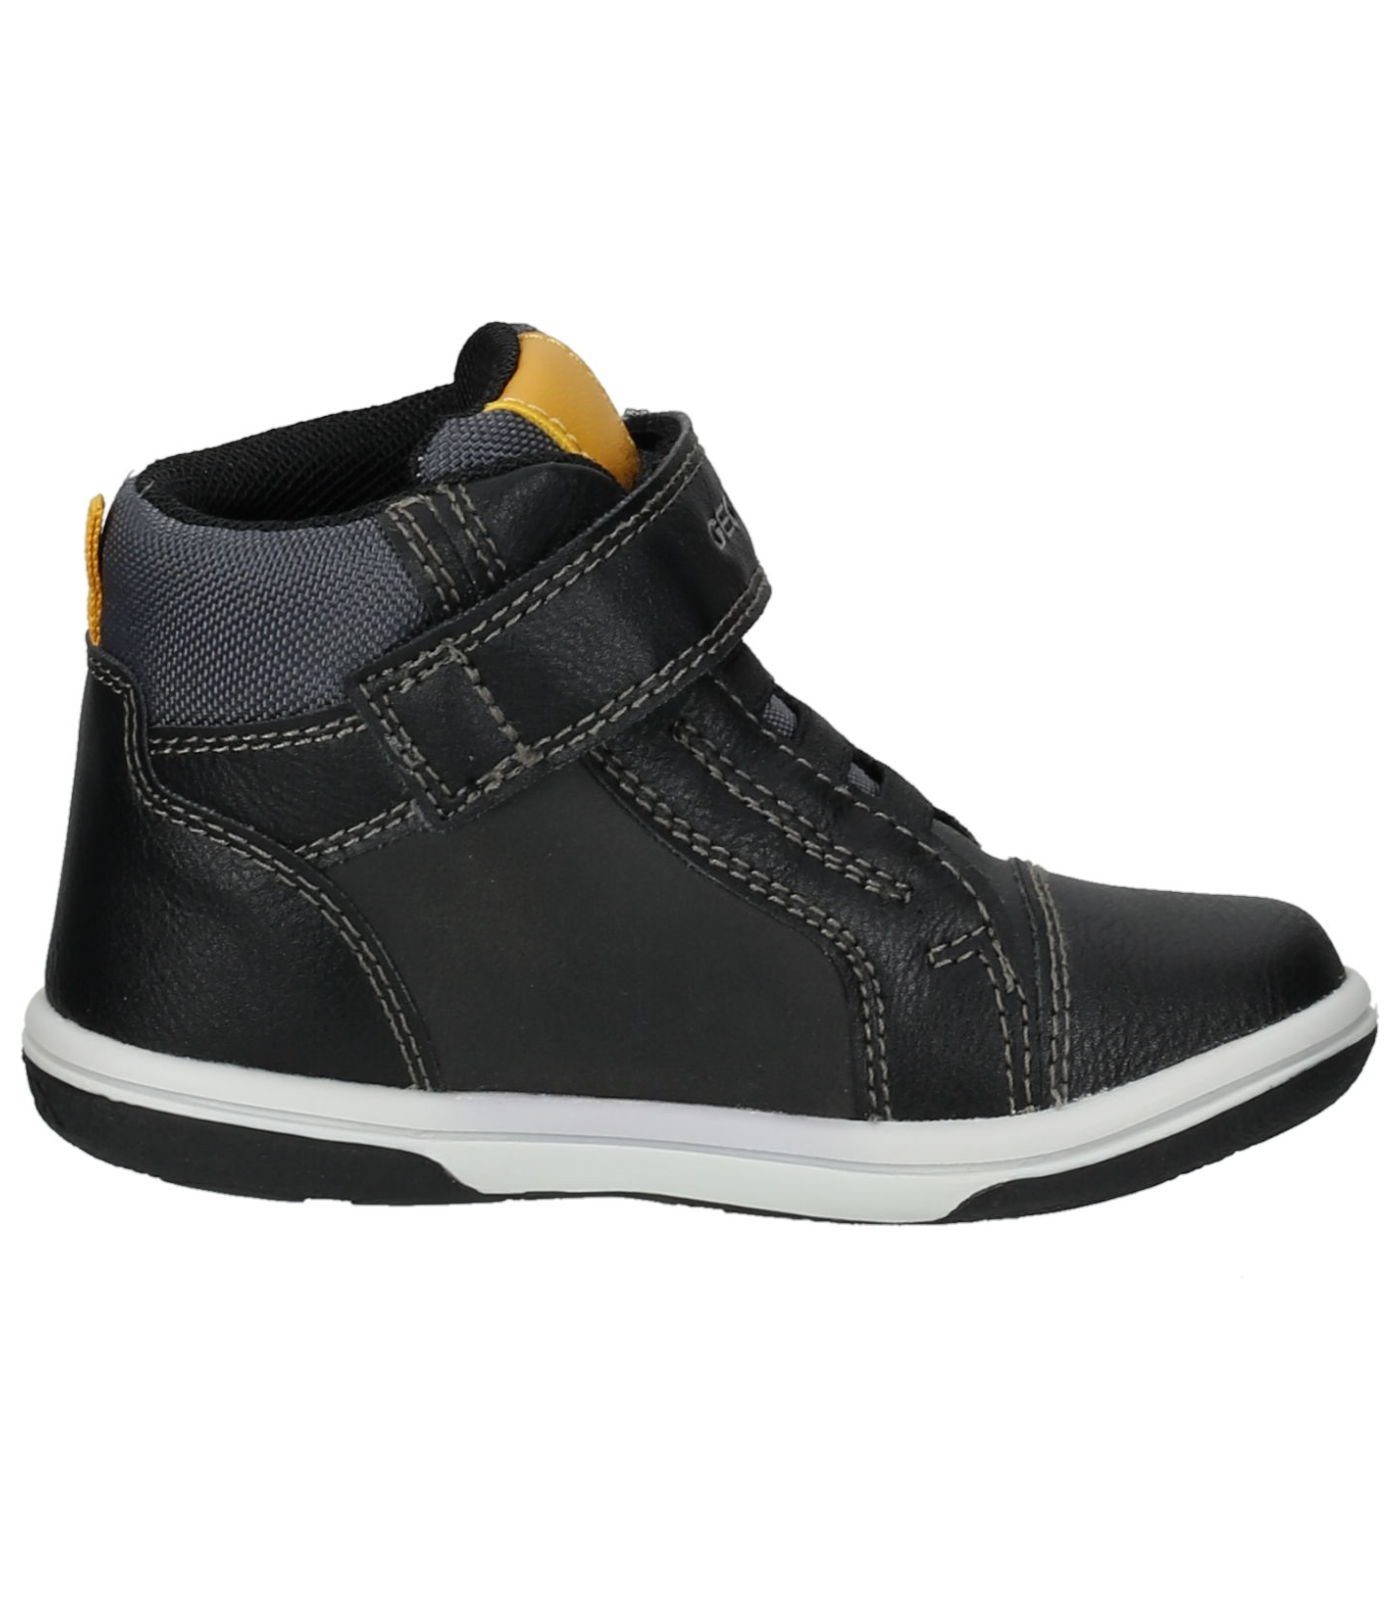 Geox Leder/Textil Sneaker Sneaker